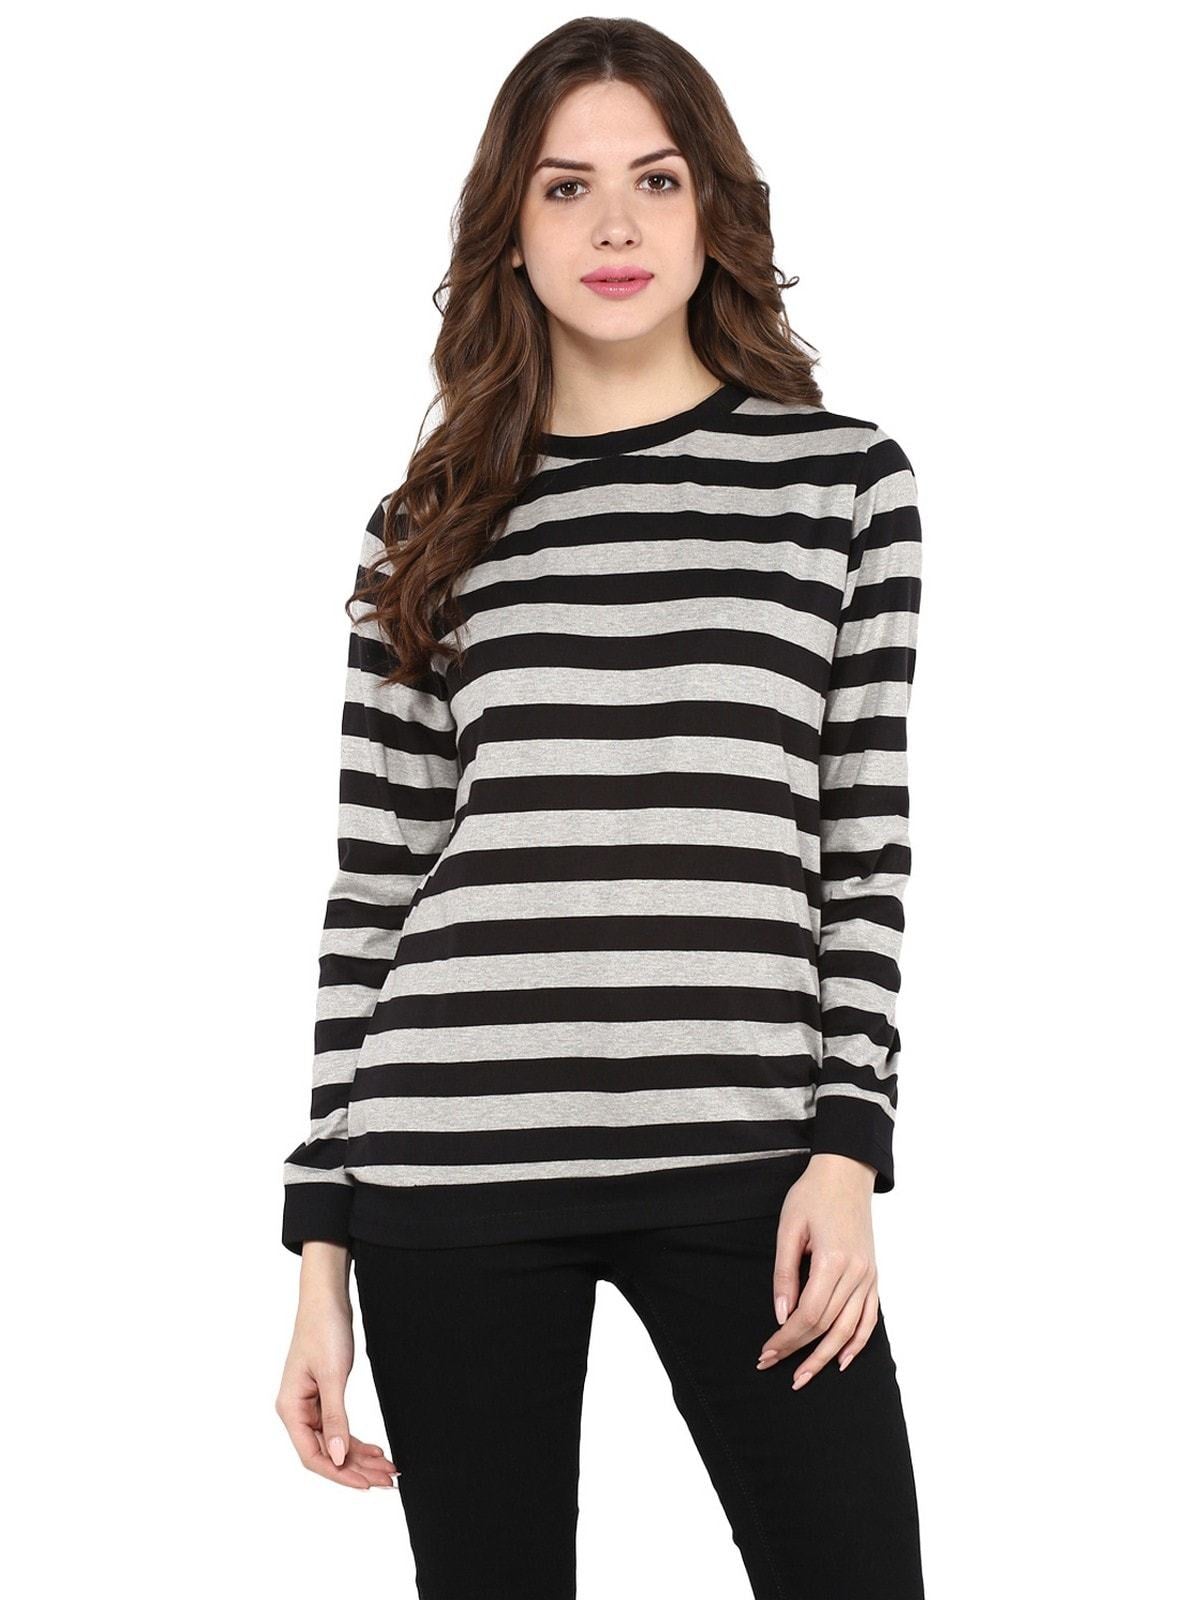 Women's Stripe Round Neck Sweater - Pannkh